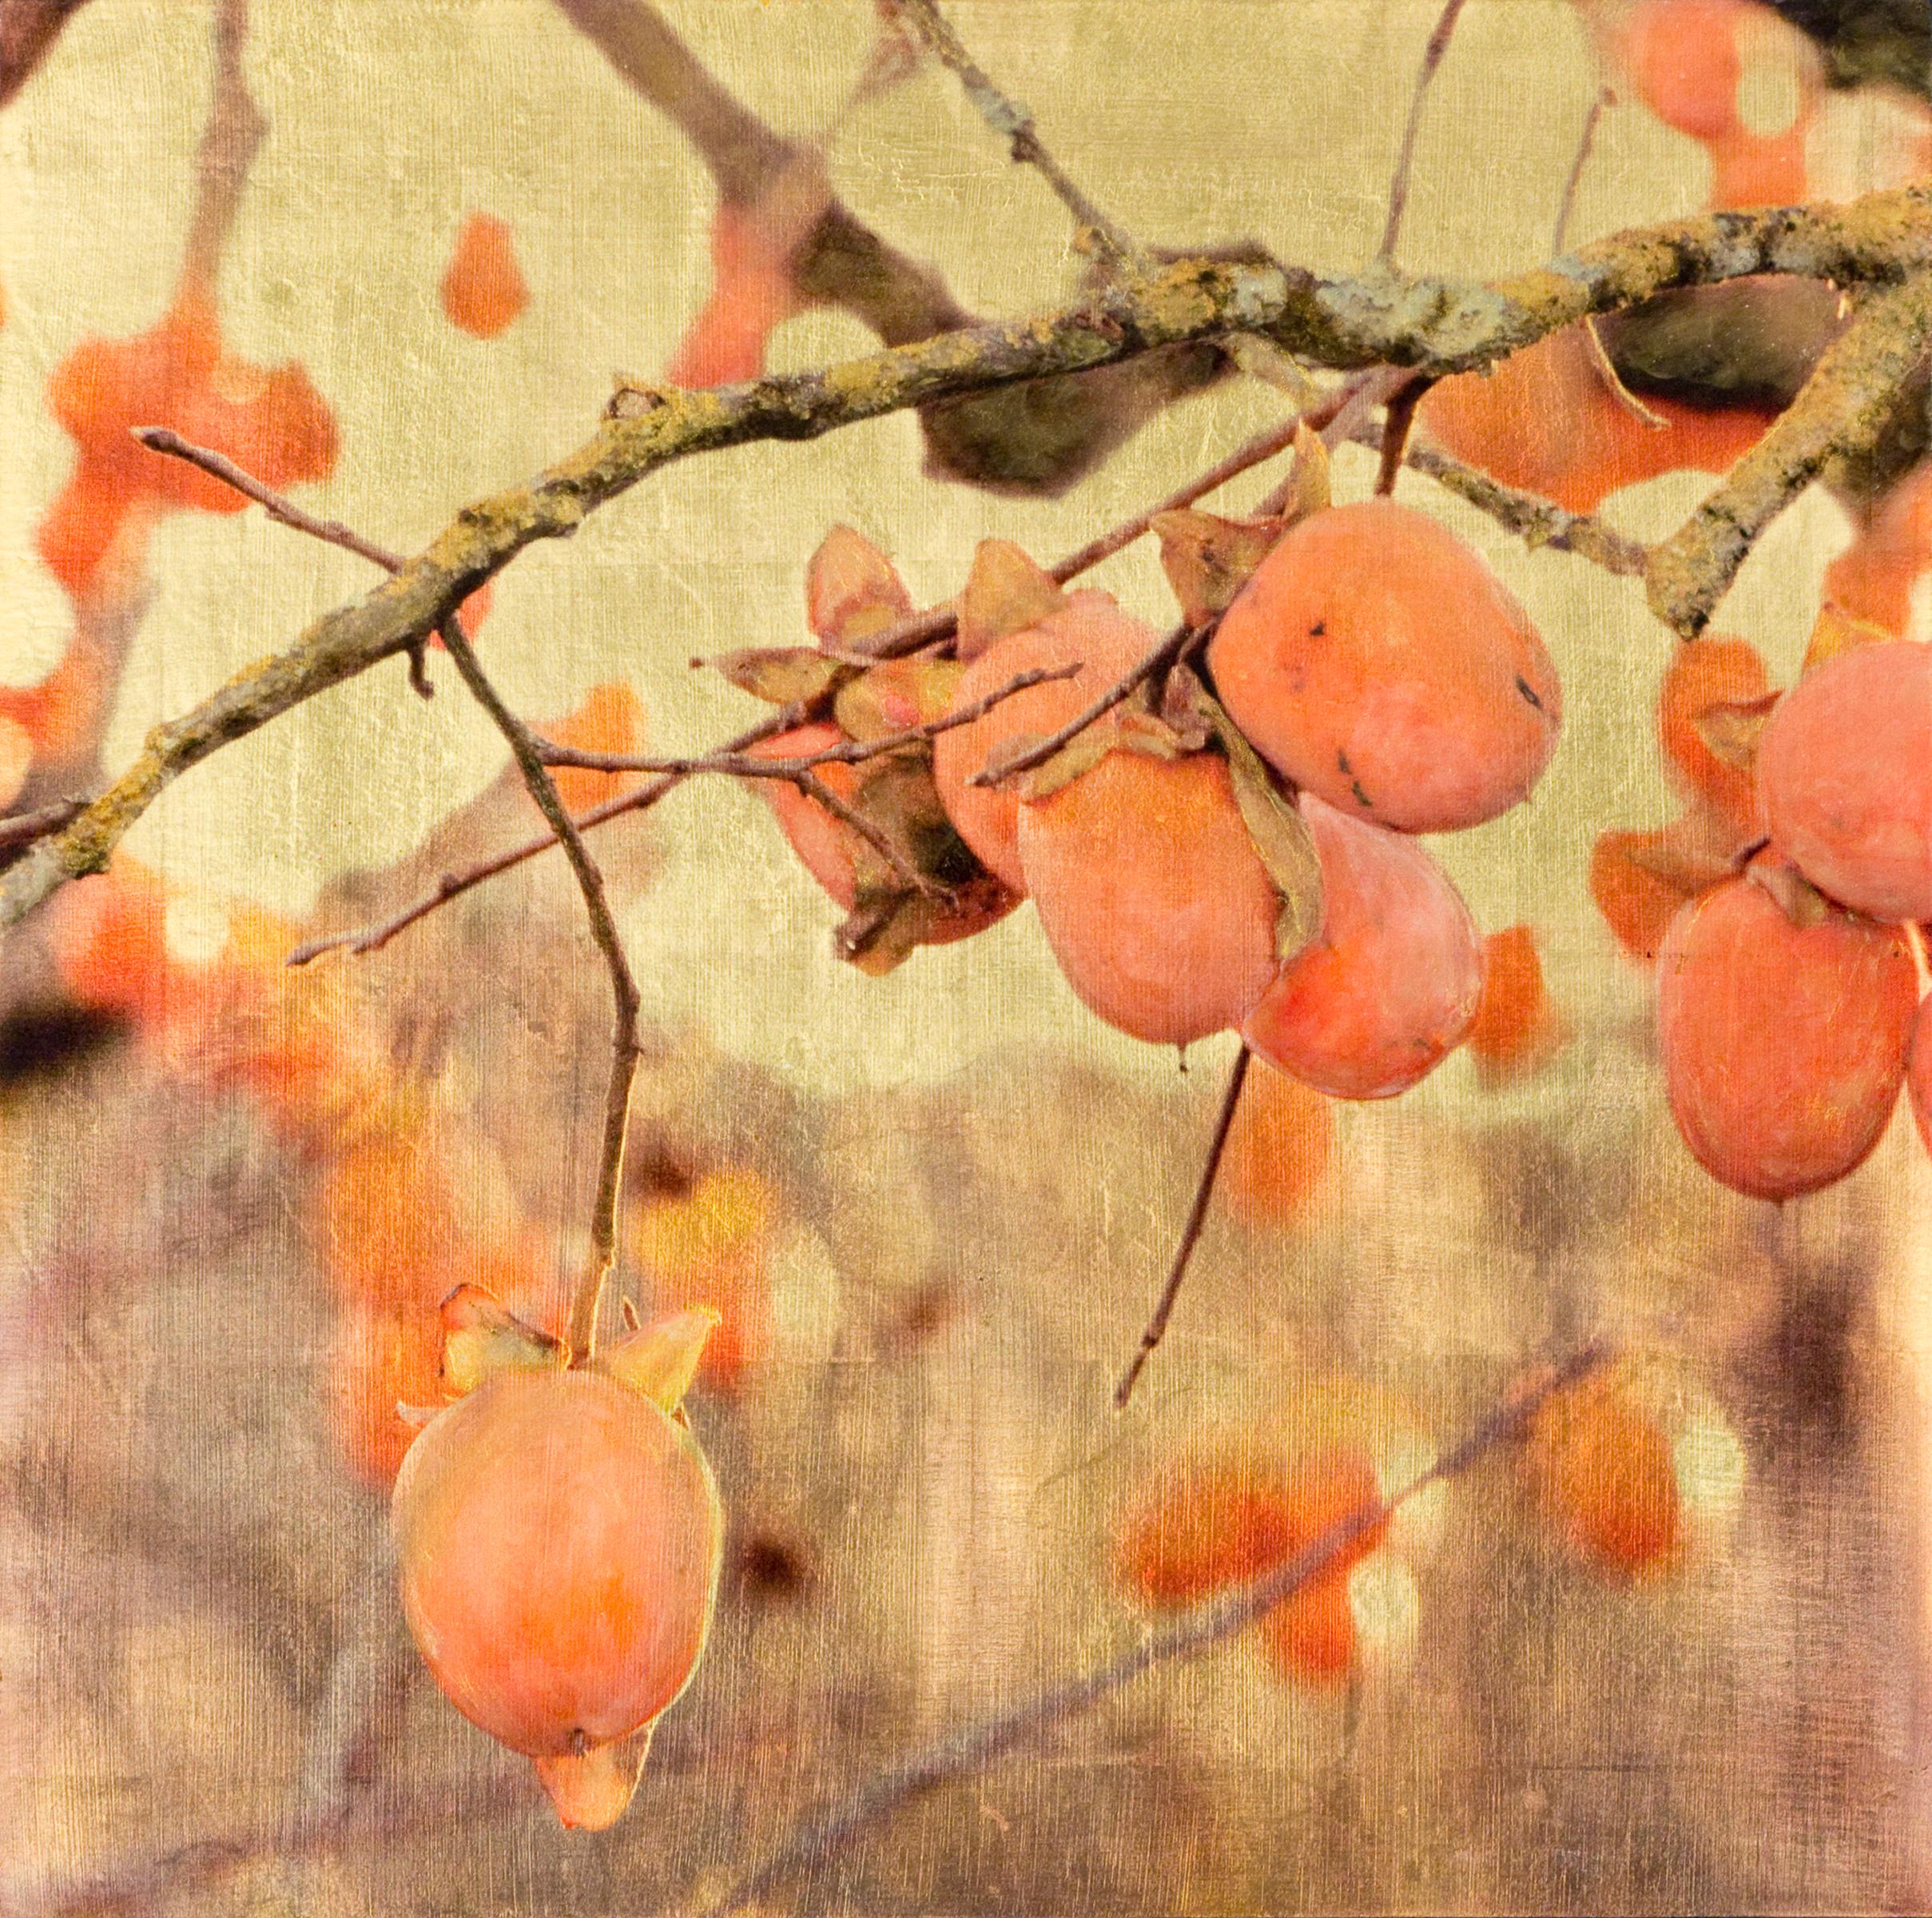 Jove's Feuer, Himbeerbaum, Orange, Blattgold, Harz – Mixed Media Art von Susan Goldsmith